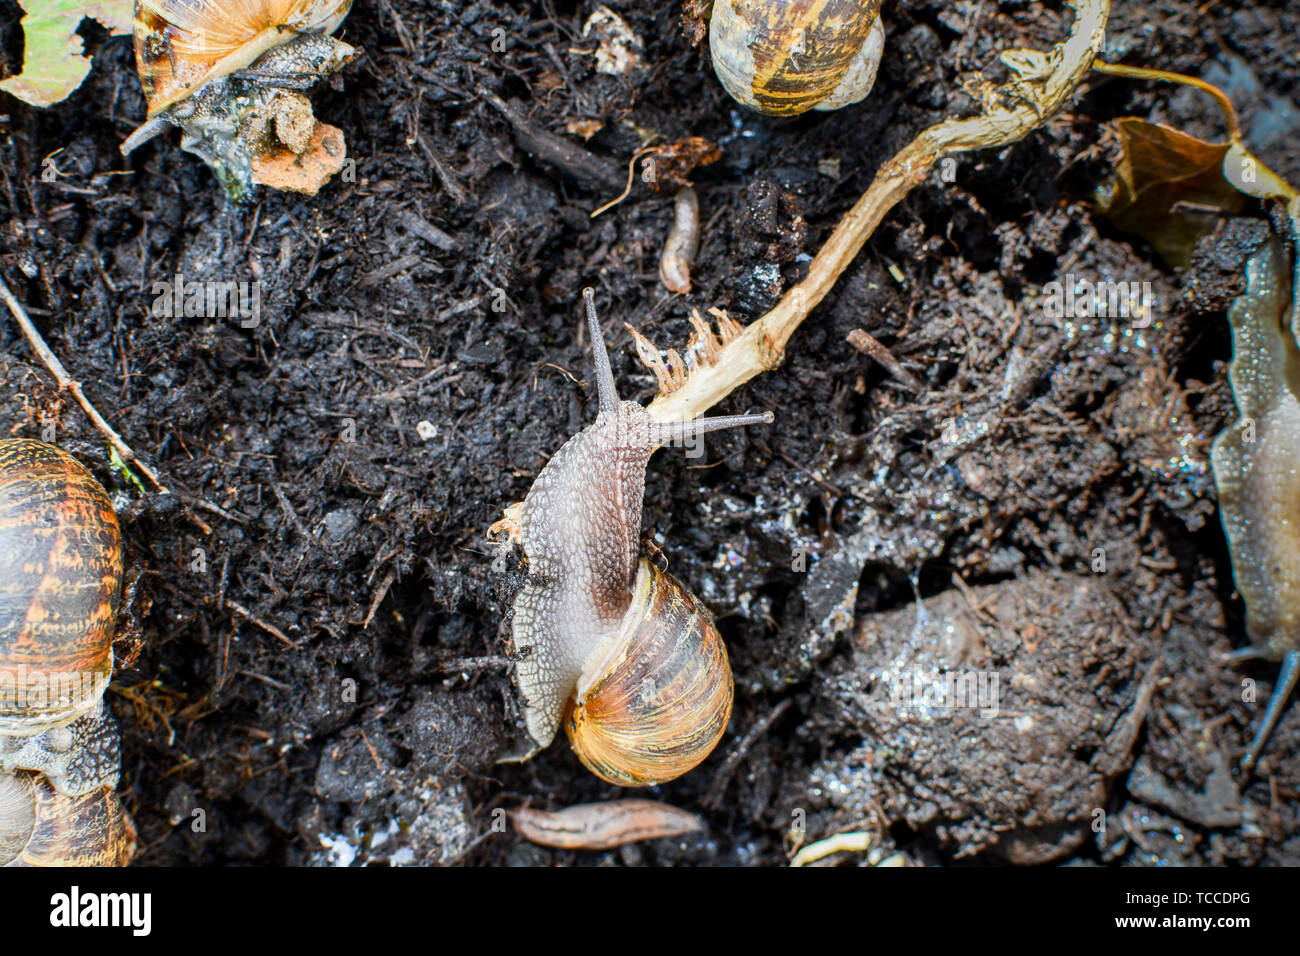 Los caracoles arrastrándose alrededor de barro en el exterior, en un jardín en su entorno natural. Foto de stock